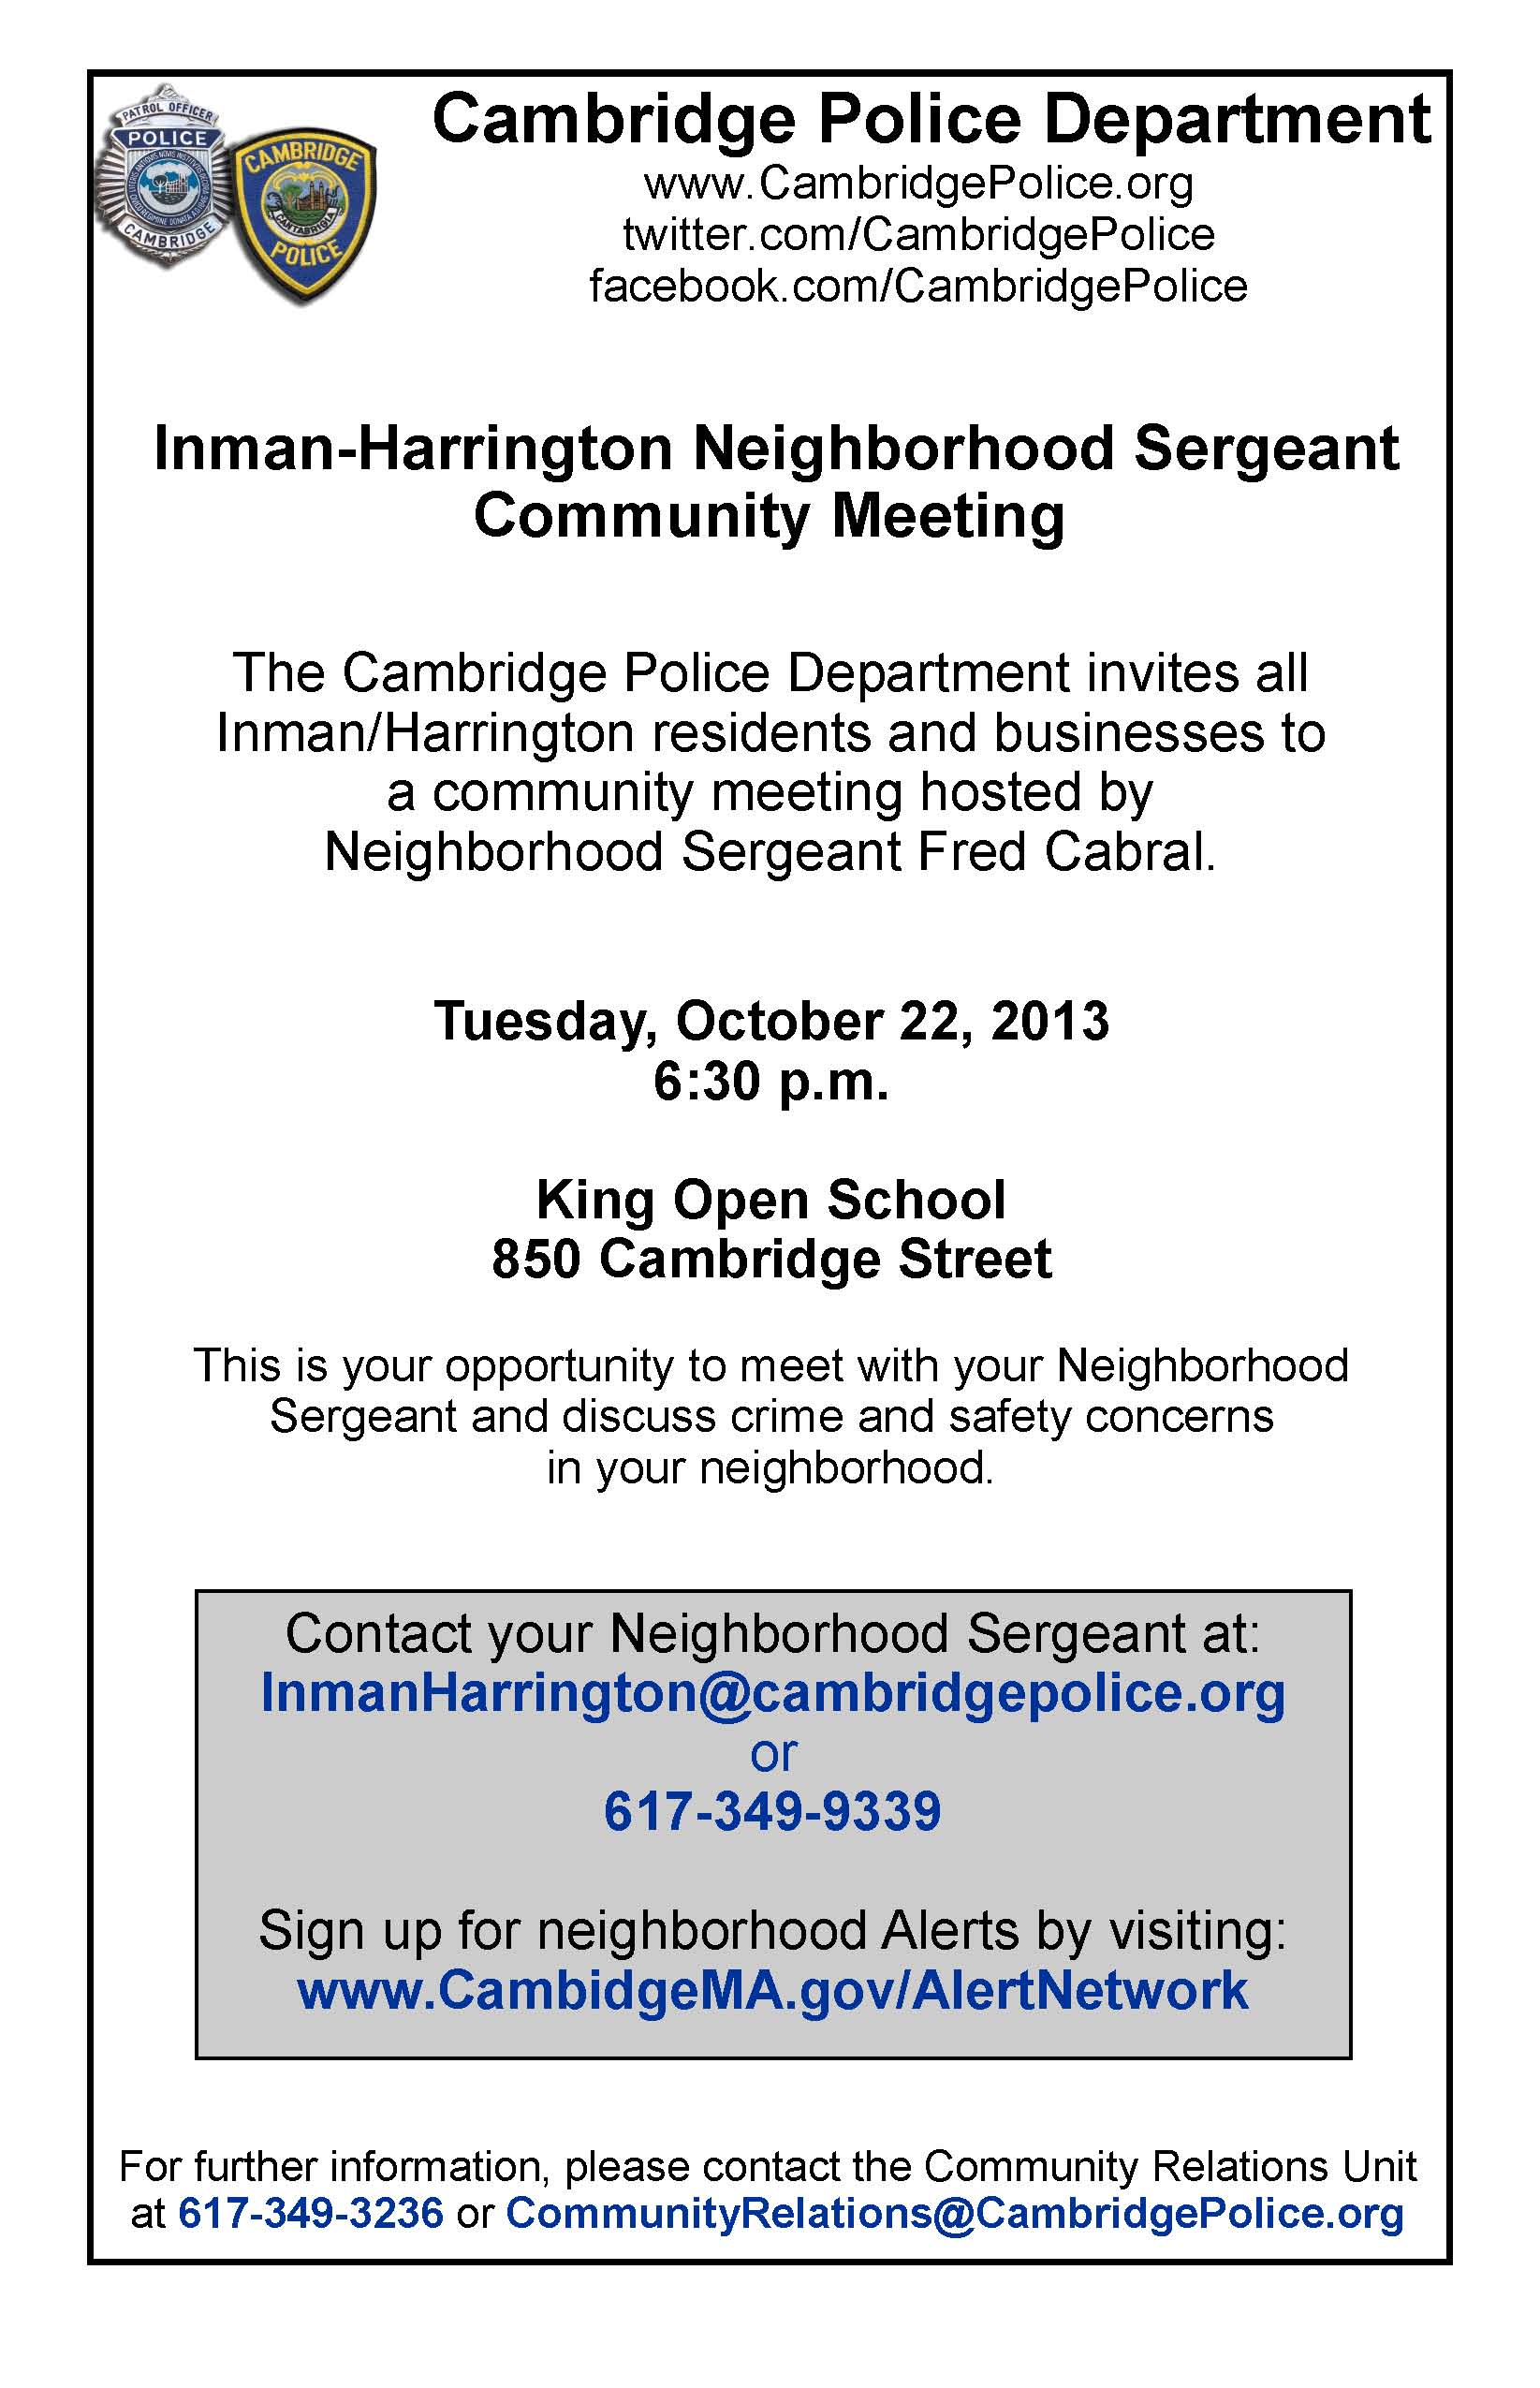 Neighborhood Meeting Flyer